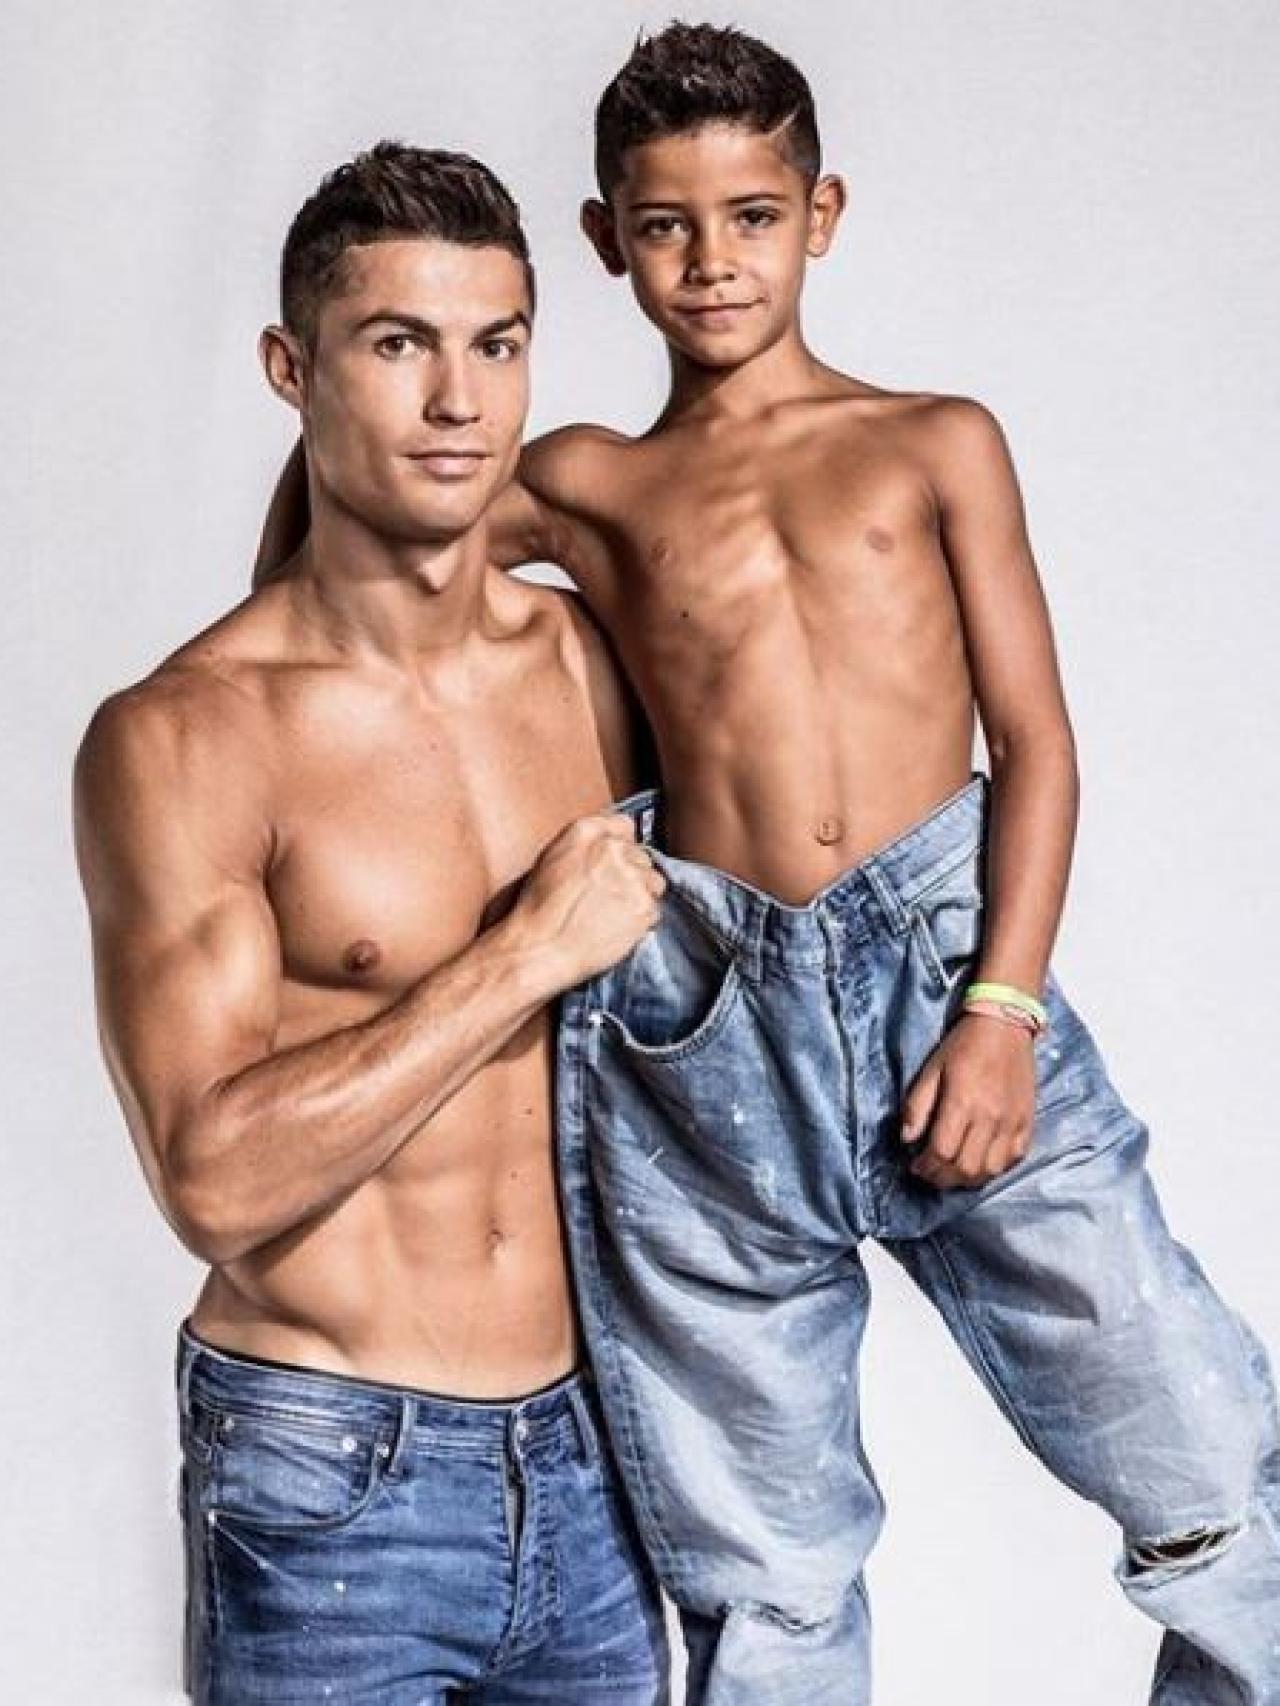 Padre e hijo, idénticos y mostrando torso.